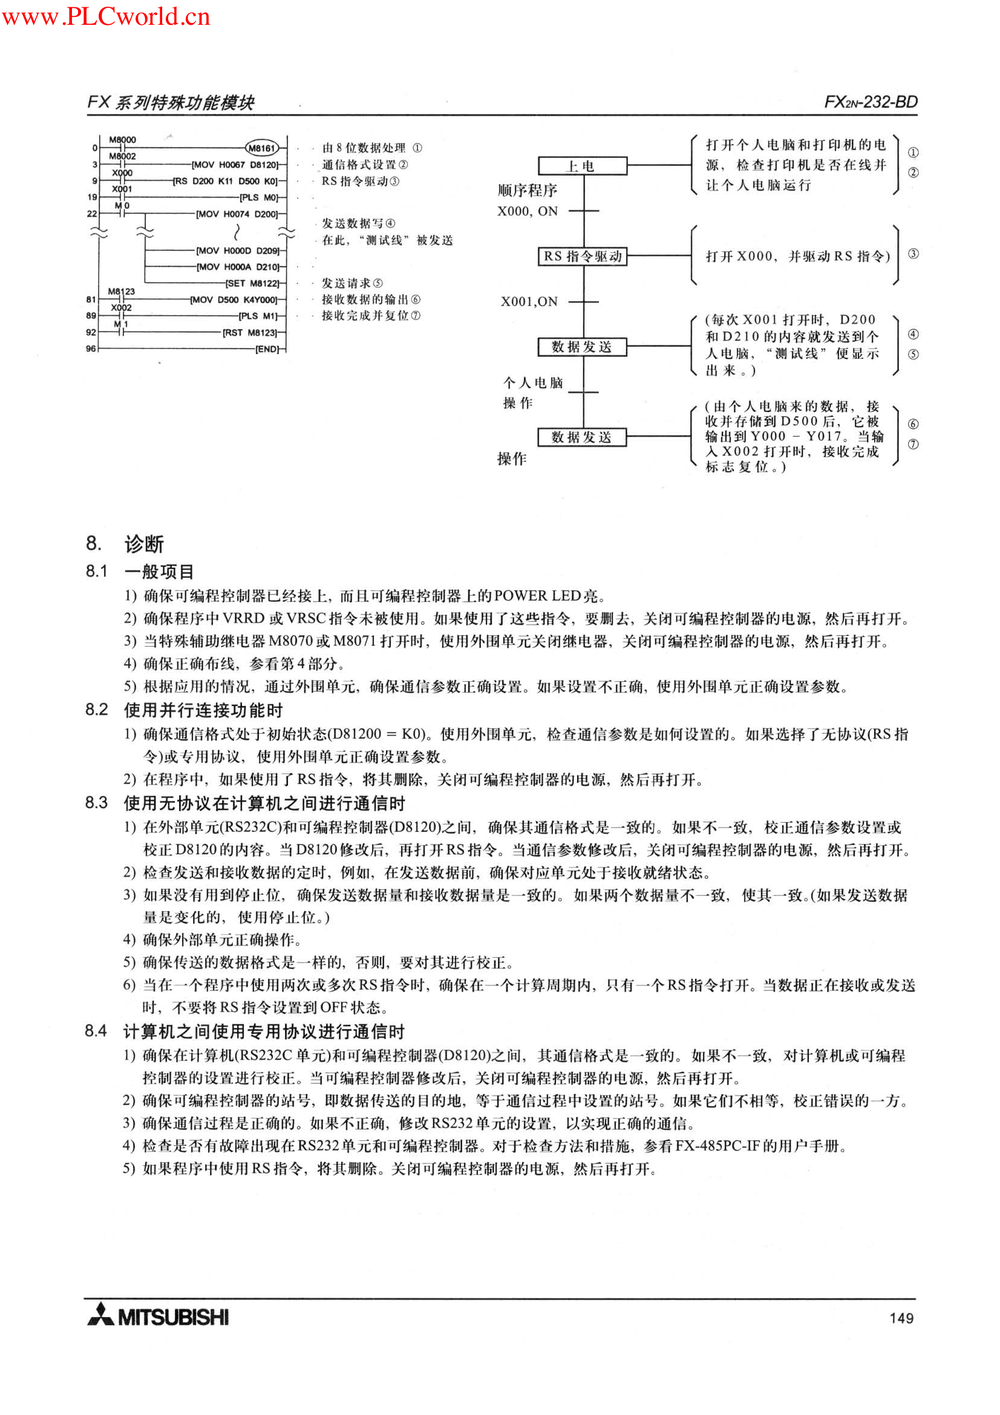 FX2N-232-BD用户指南.pdf-第6页.png